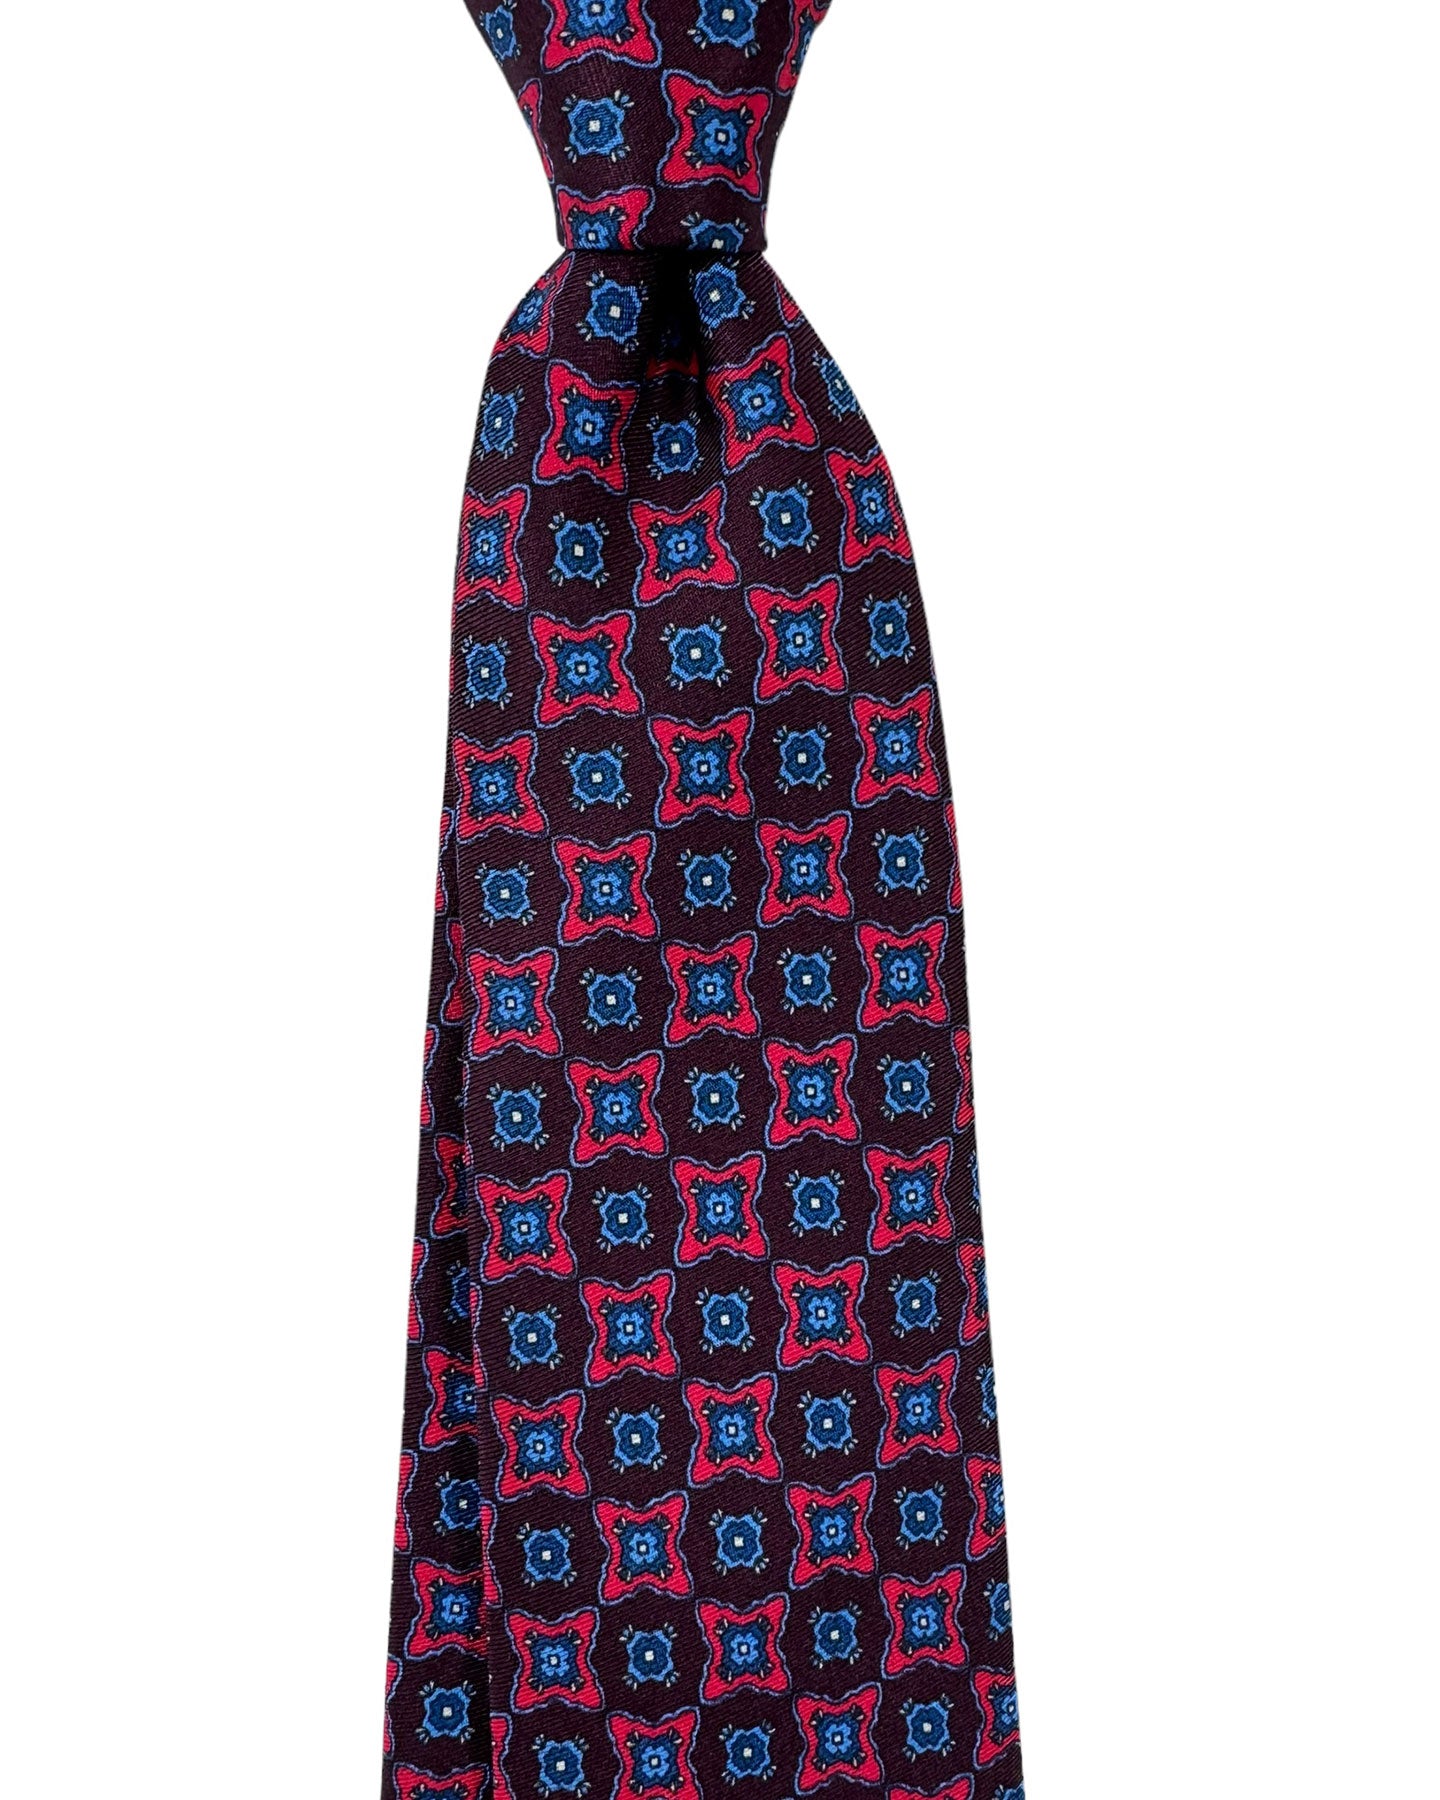  Sevenfold Necktie 